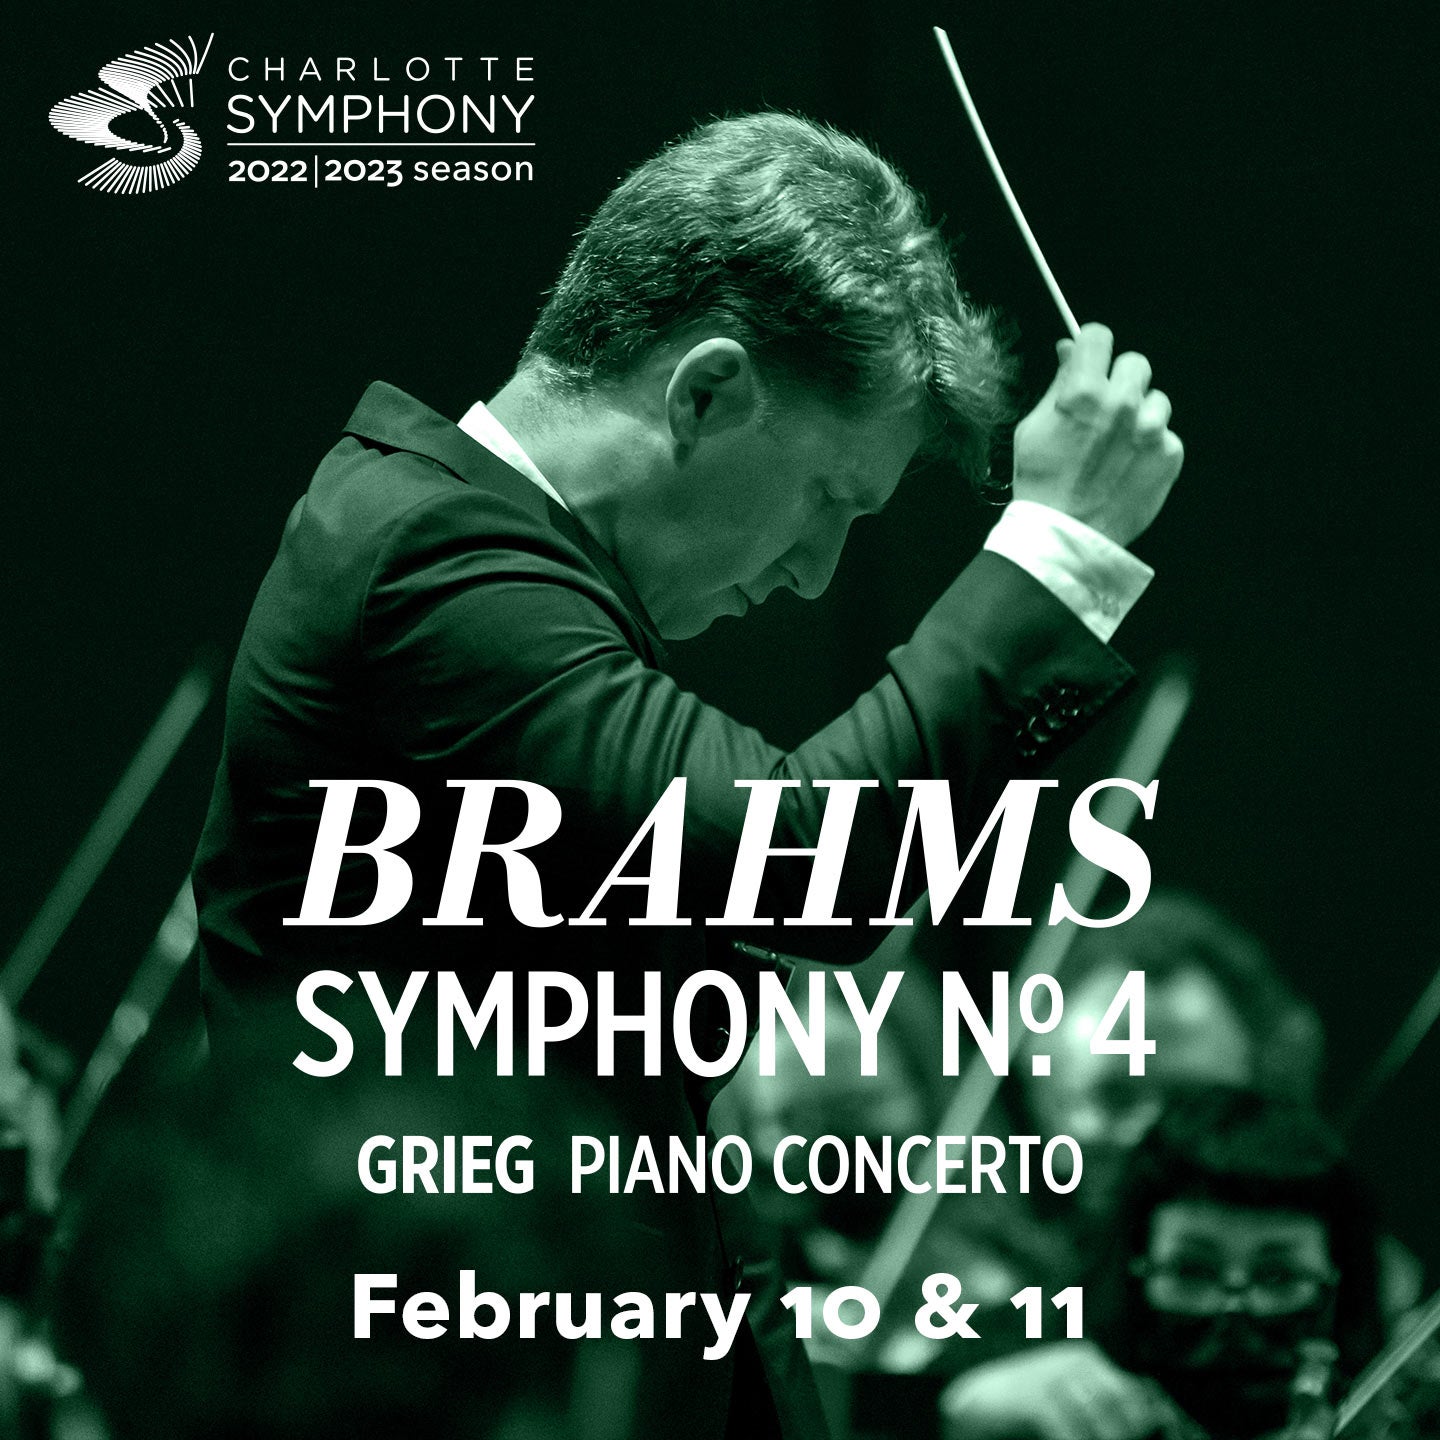 Charlotte Symphony: Brahms Symphony No. 4